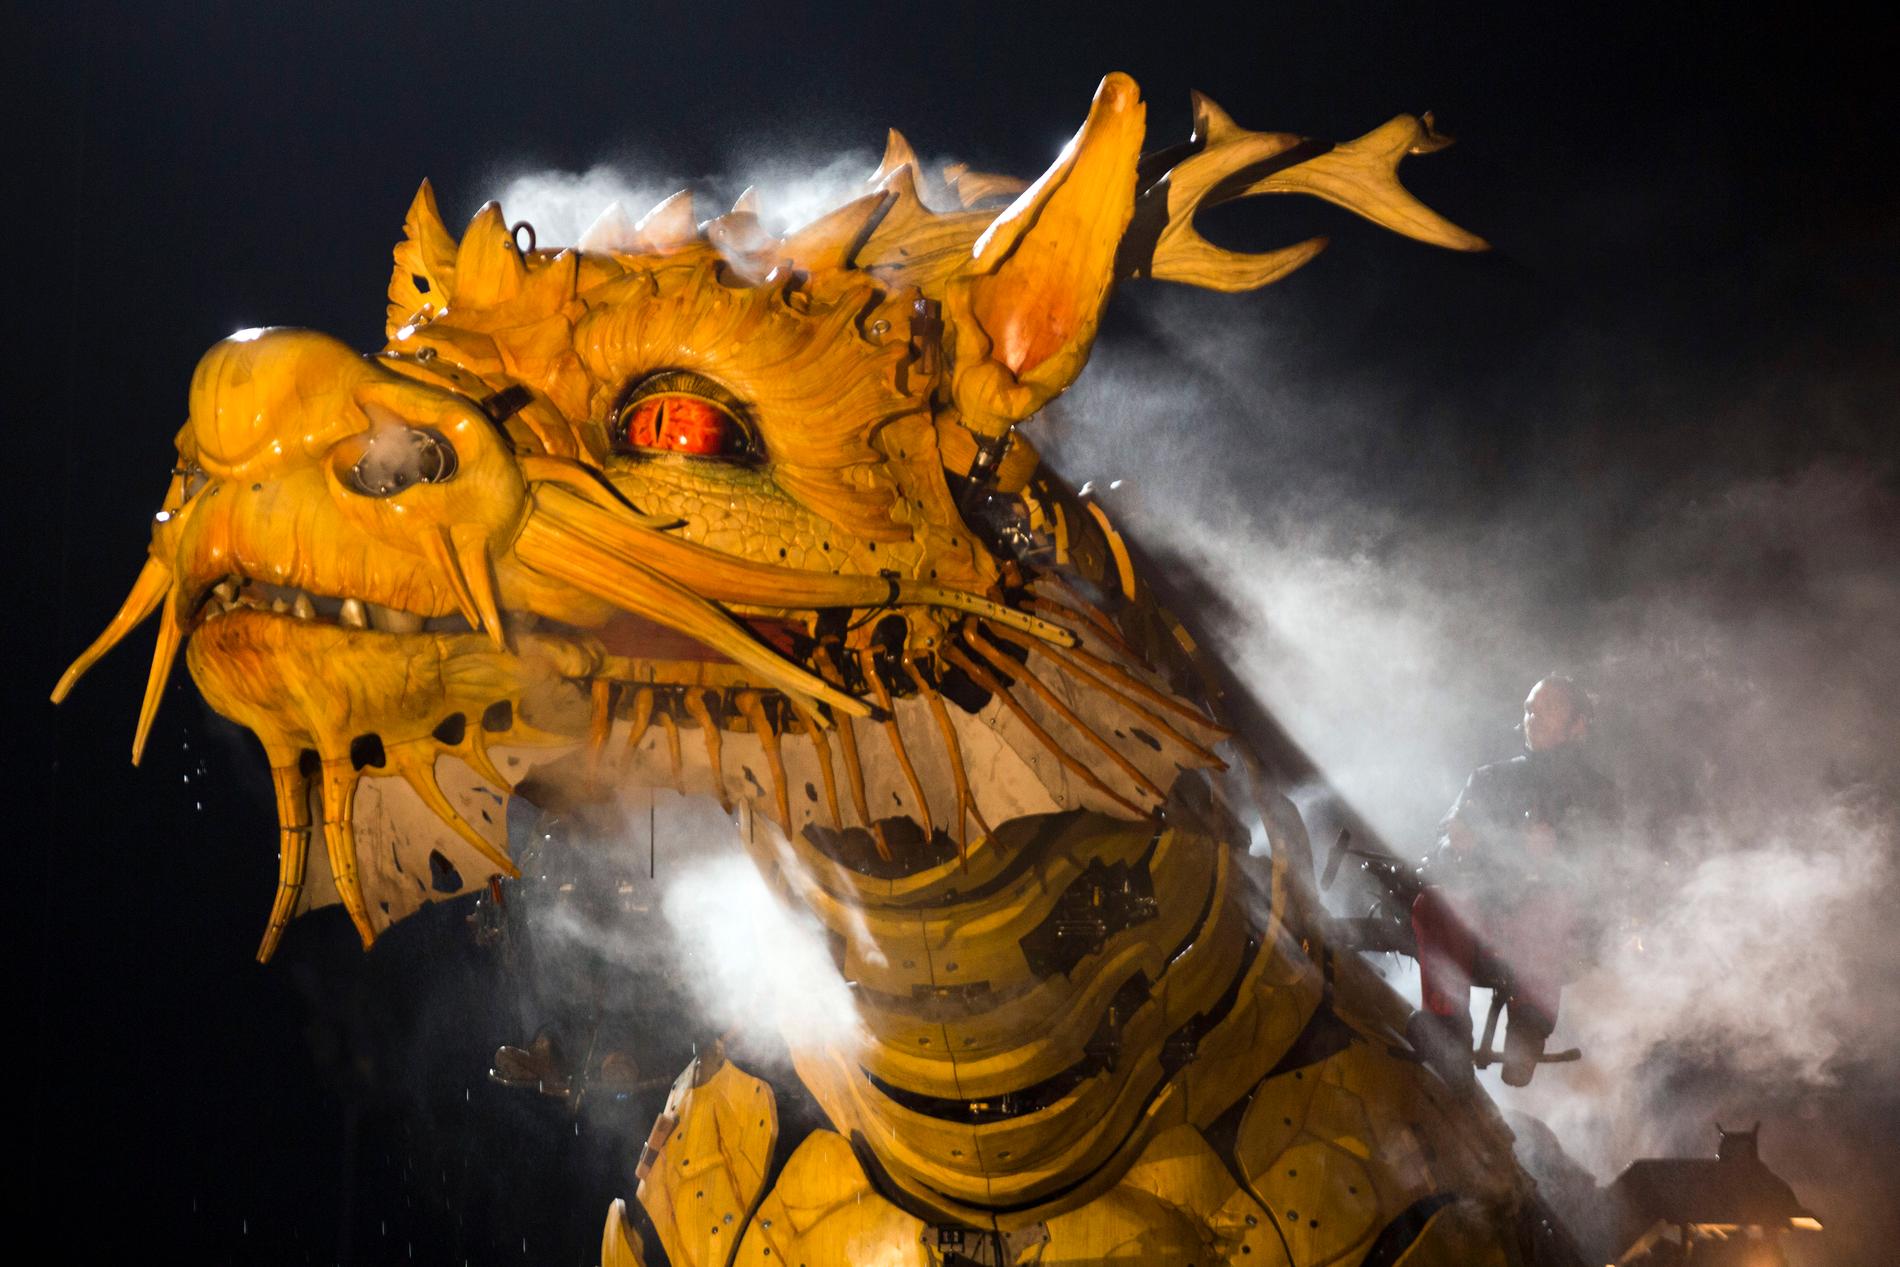 Draken är monsterkungen, anser historikern Bo Eriksson som skrivit flera böcker om monster. Här är en mekanisk drake som framträder under festligheter i Kina. Arkivbild.